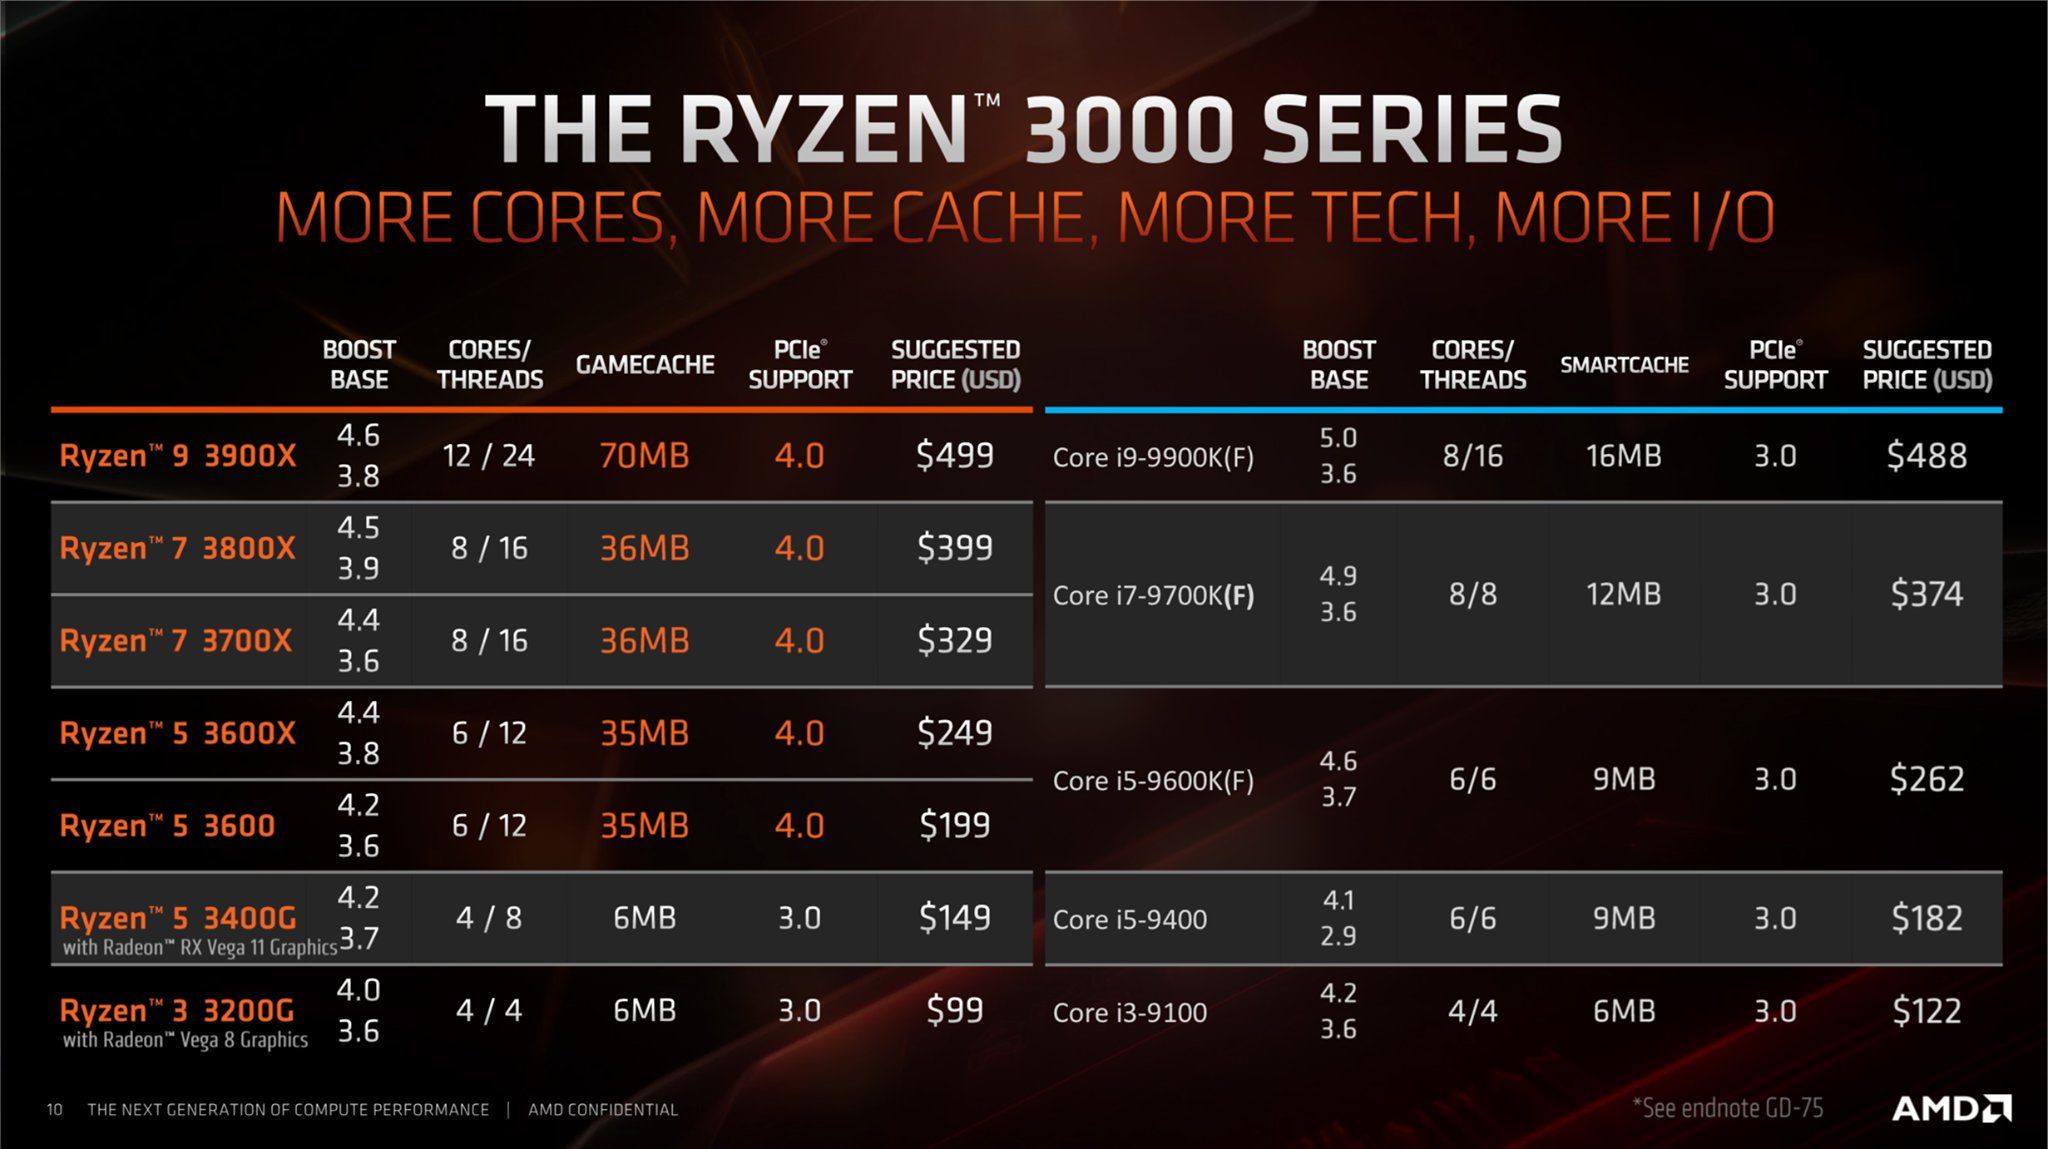 AMD-Ryzen-3000-APU-Lineup_1.jpg